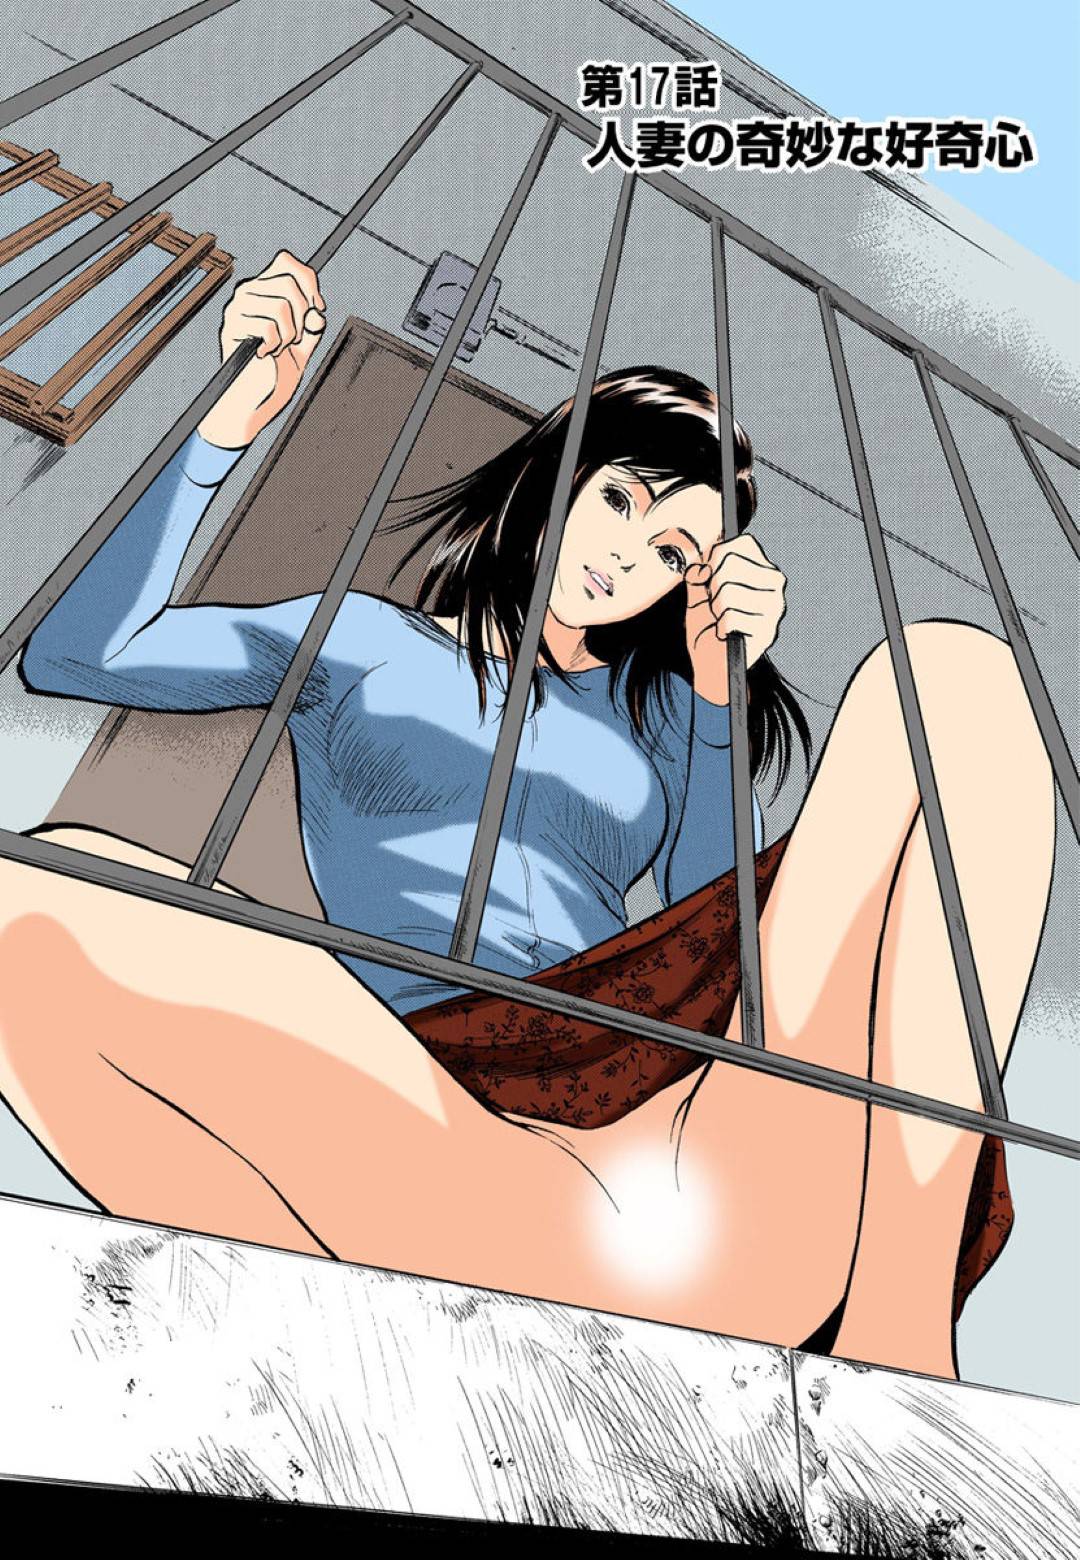 【エロ漫画】アパートの2階からパンツを見せて誘惑する人妻。クンニされるとお返しのフェラしたり騎乗位で生挿入して禁断の浮気セックスしちゃう